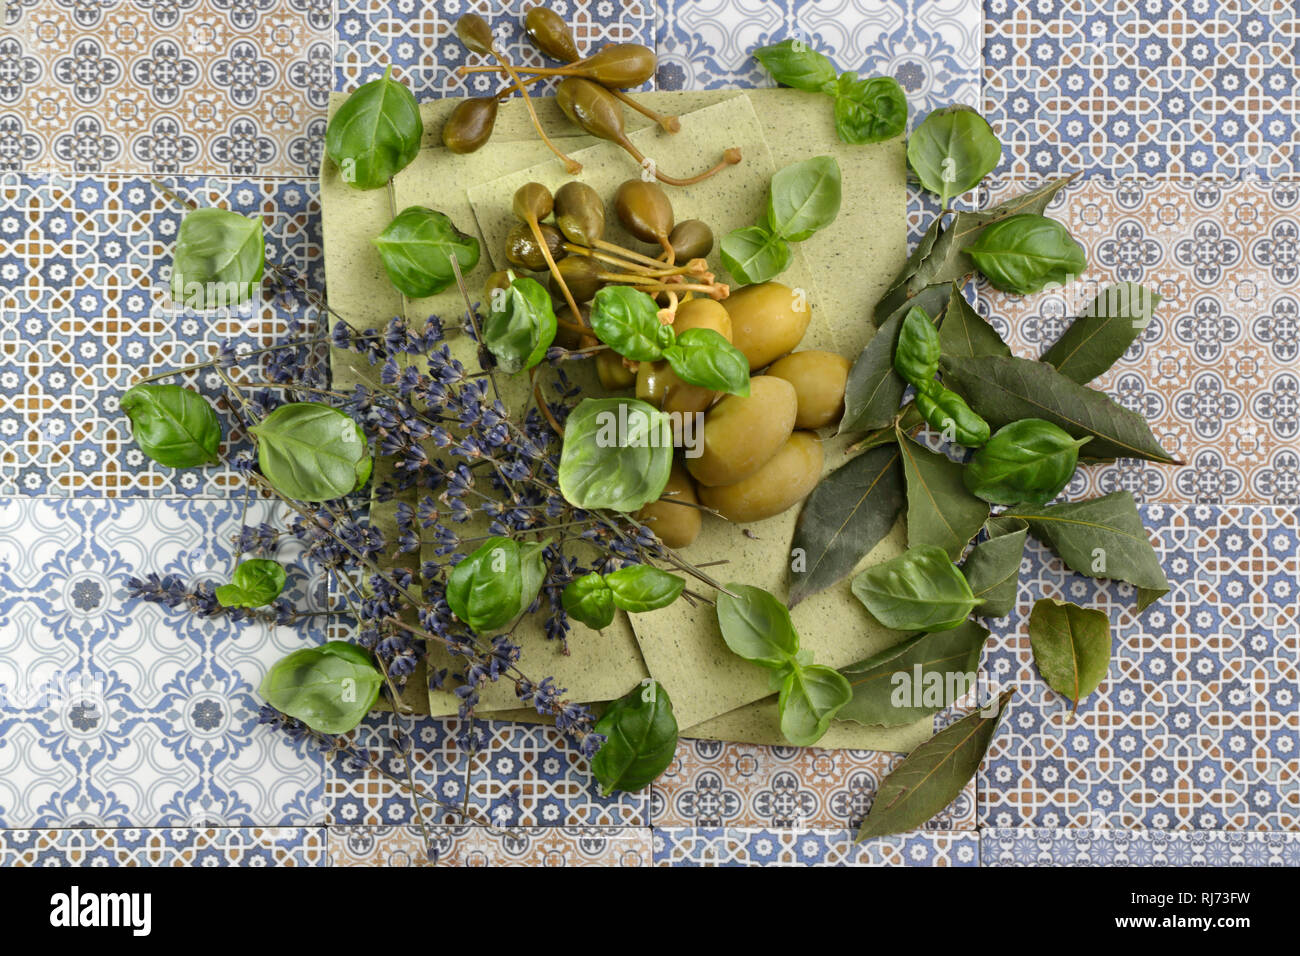 Oliven, Kapern und mediterranen Kräutern auf grünen Lasagneblättern Stock Photo